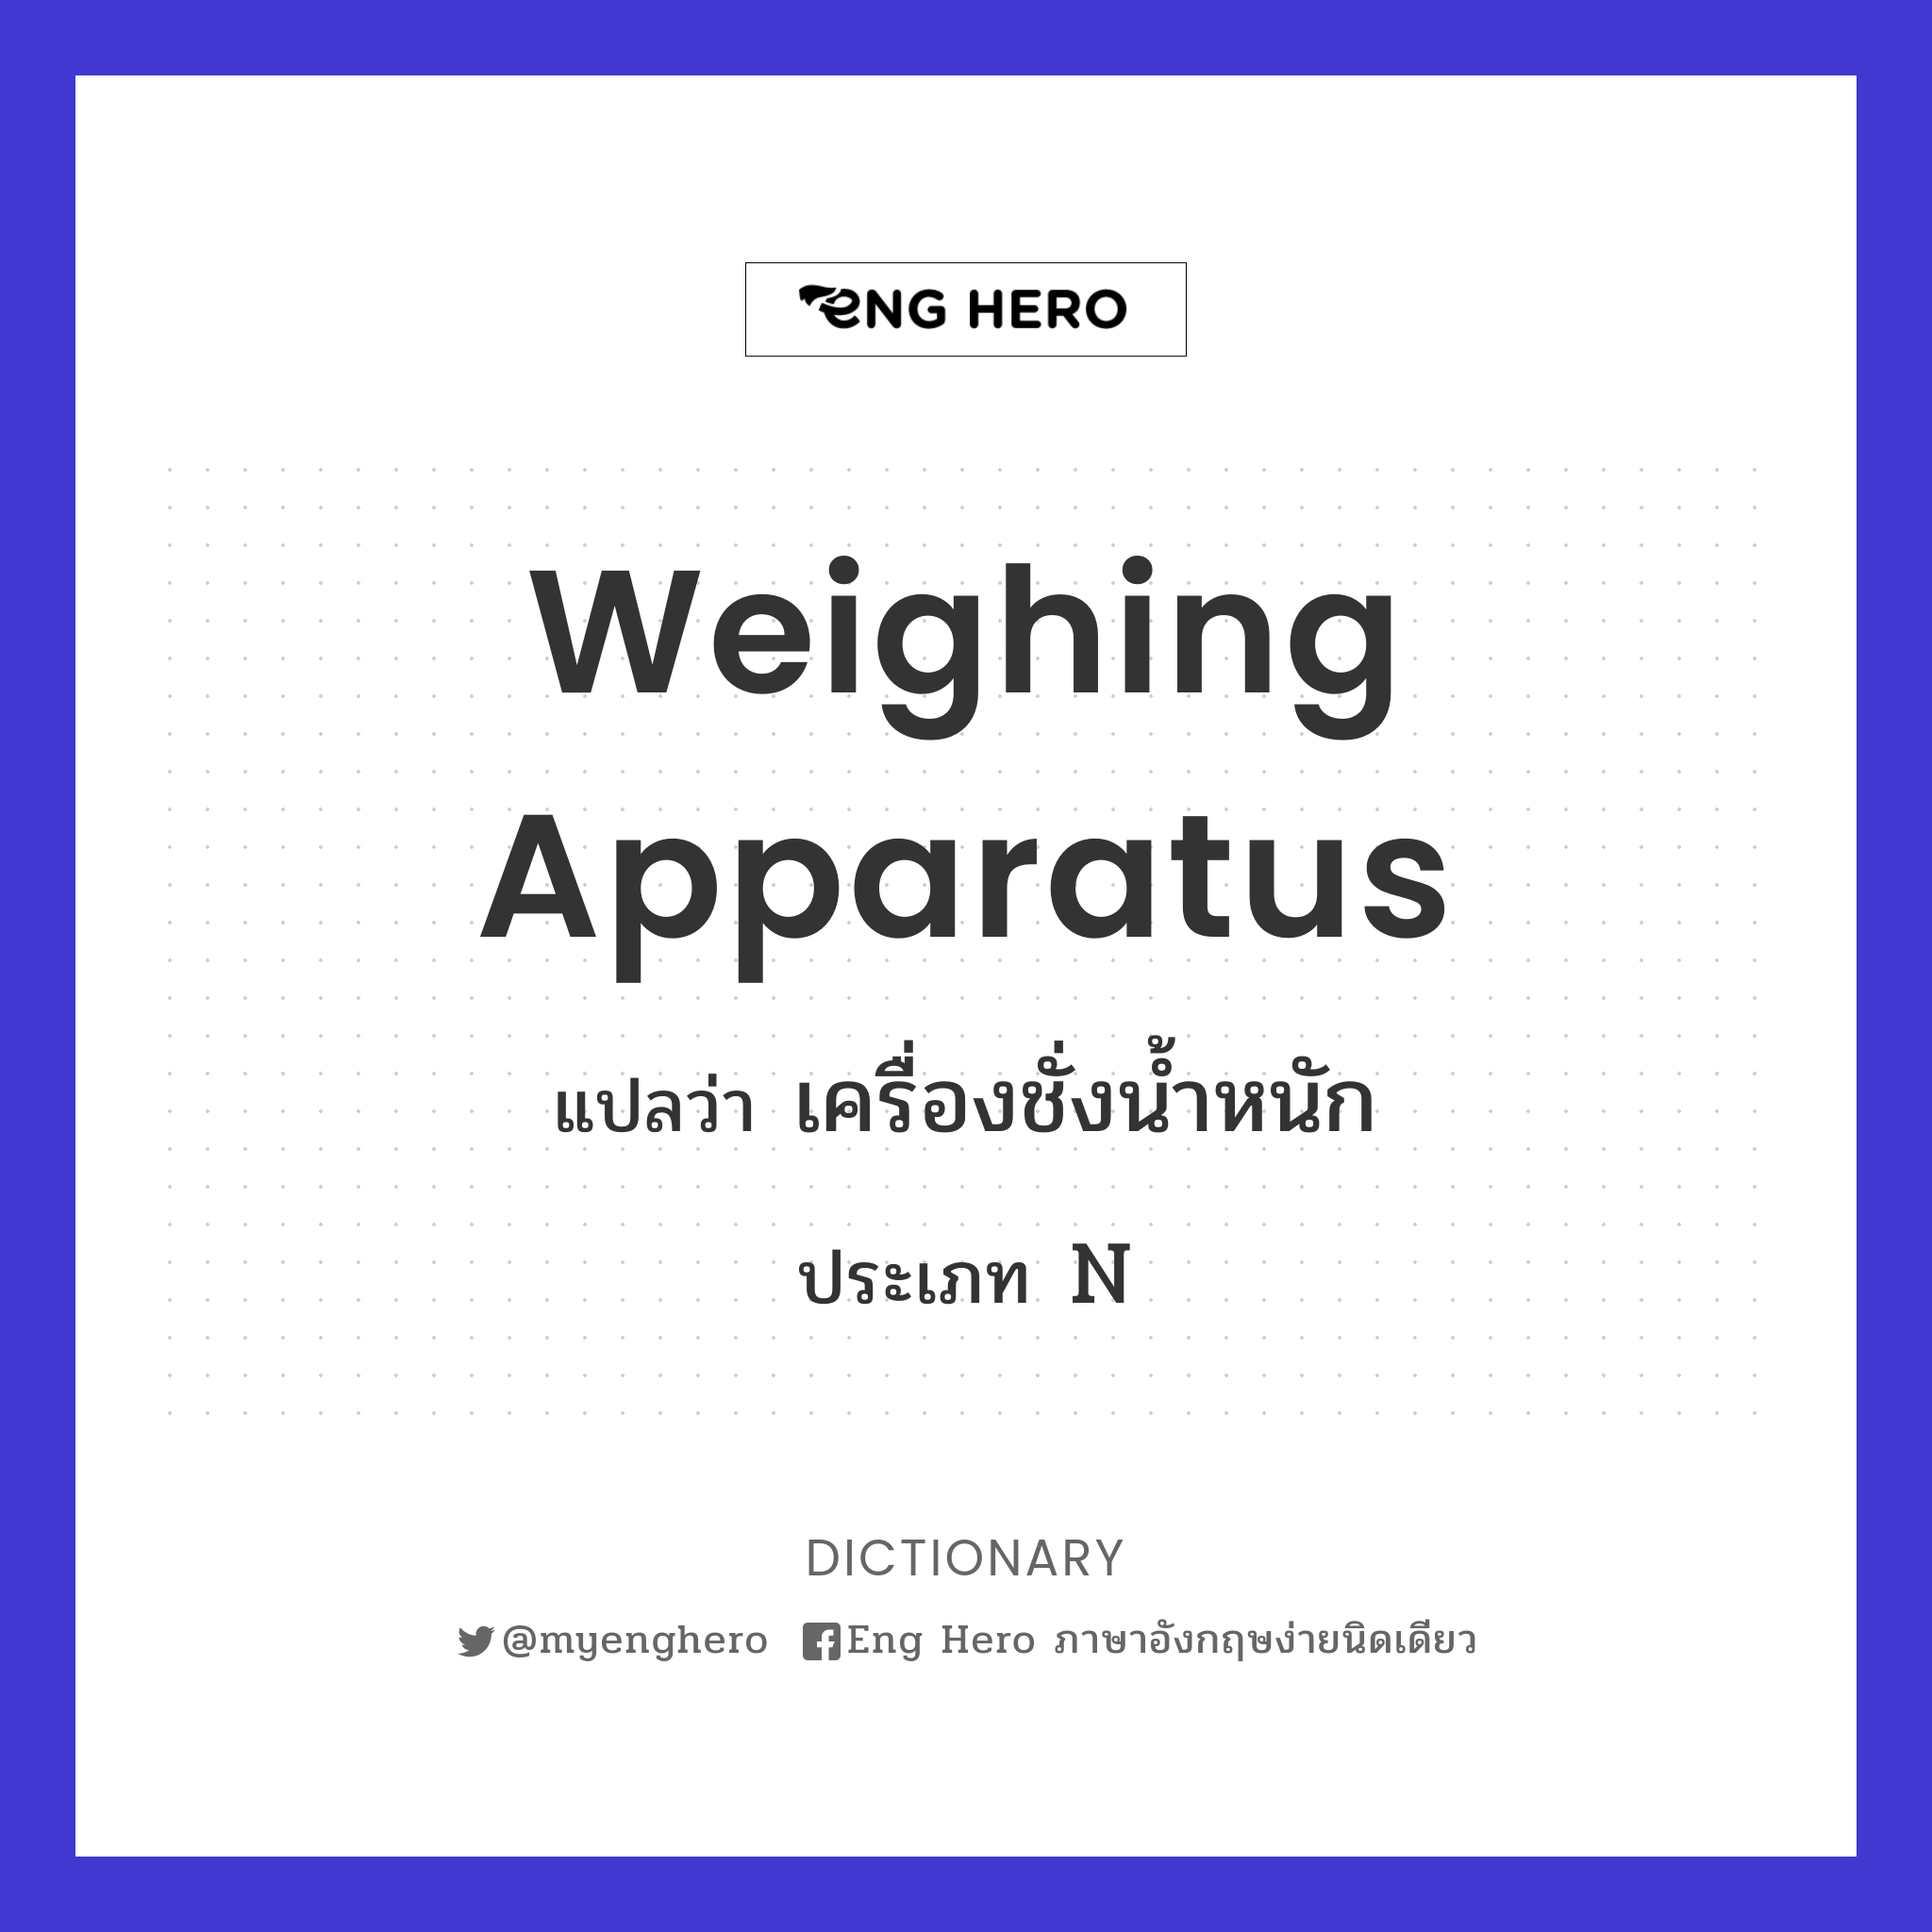 Weighing Apparatus แปลว่า เครื่องชั่งน้ำหนัก | Eng Hero เรียนภาษาอังกฤษ  ออนไลน์ ฟรี